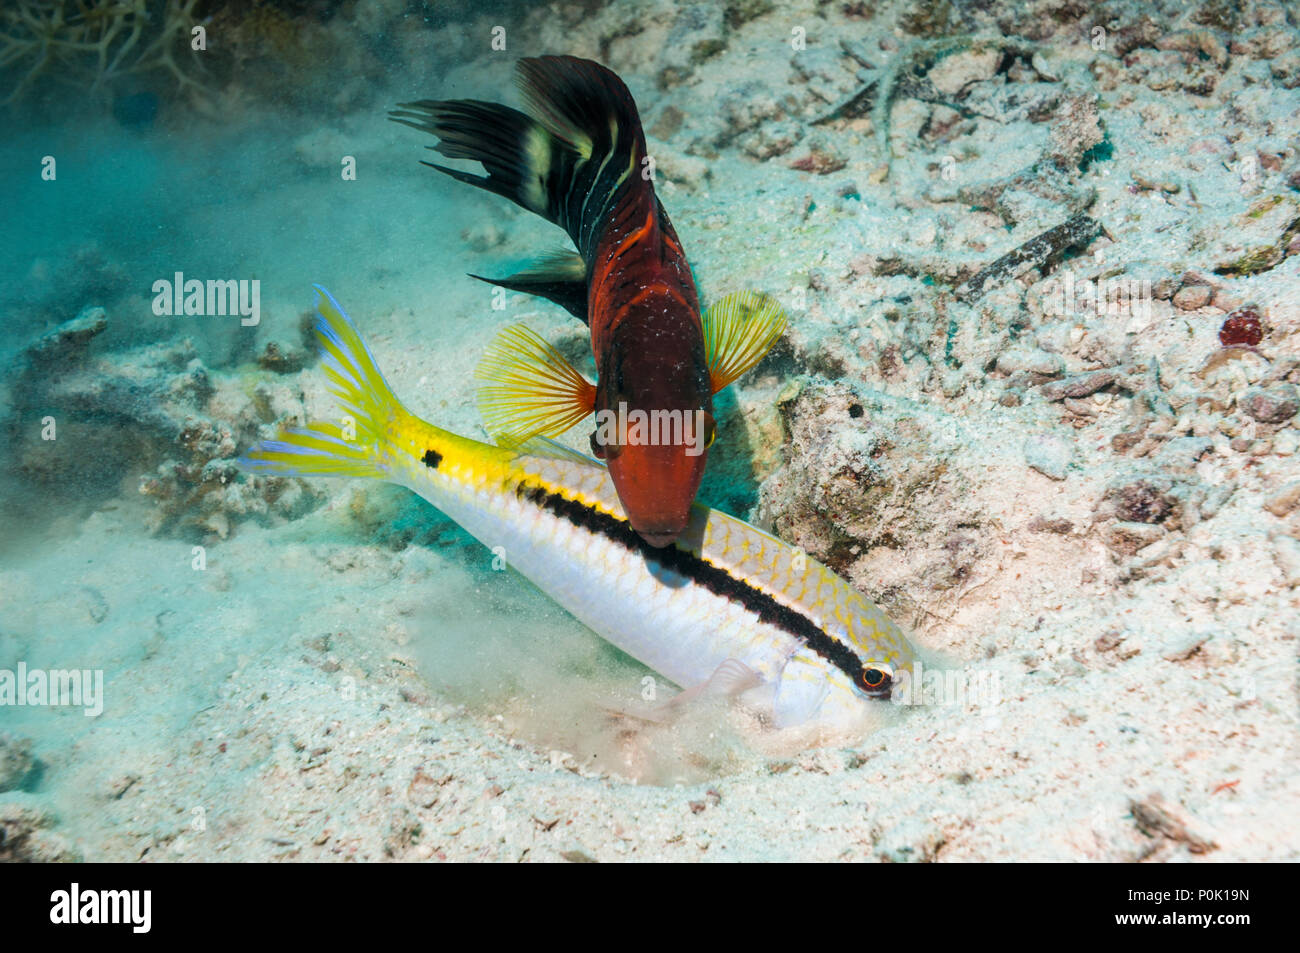 Redbanded oder Redbreasted lippfisch (Cheilinus quinquecinctus) nach einer Dash-und-dot Meerbarben (Parapeneus barbarinus) Graben im Sand zu essen. Stockfoto